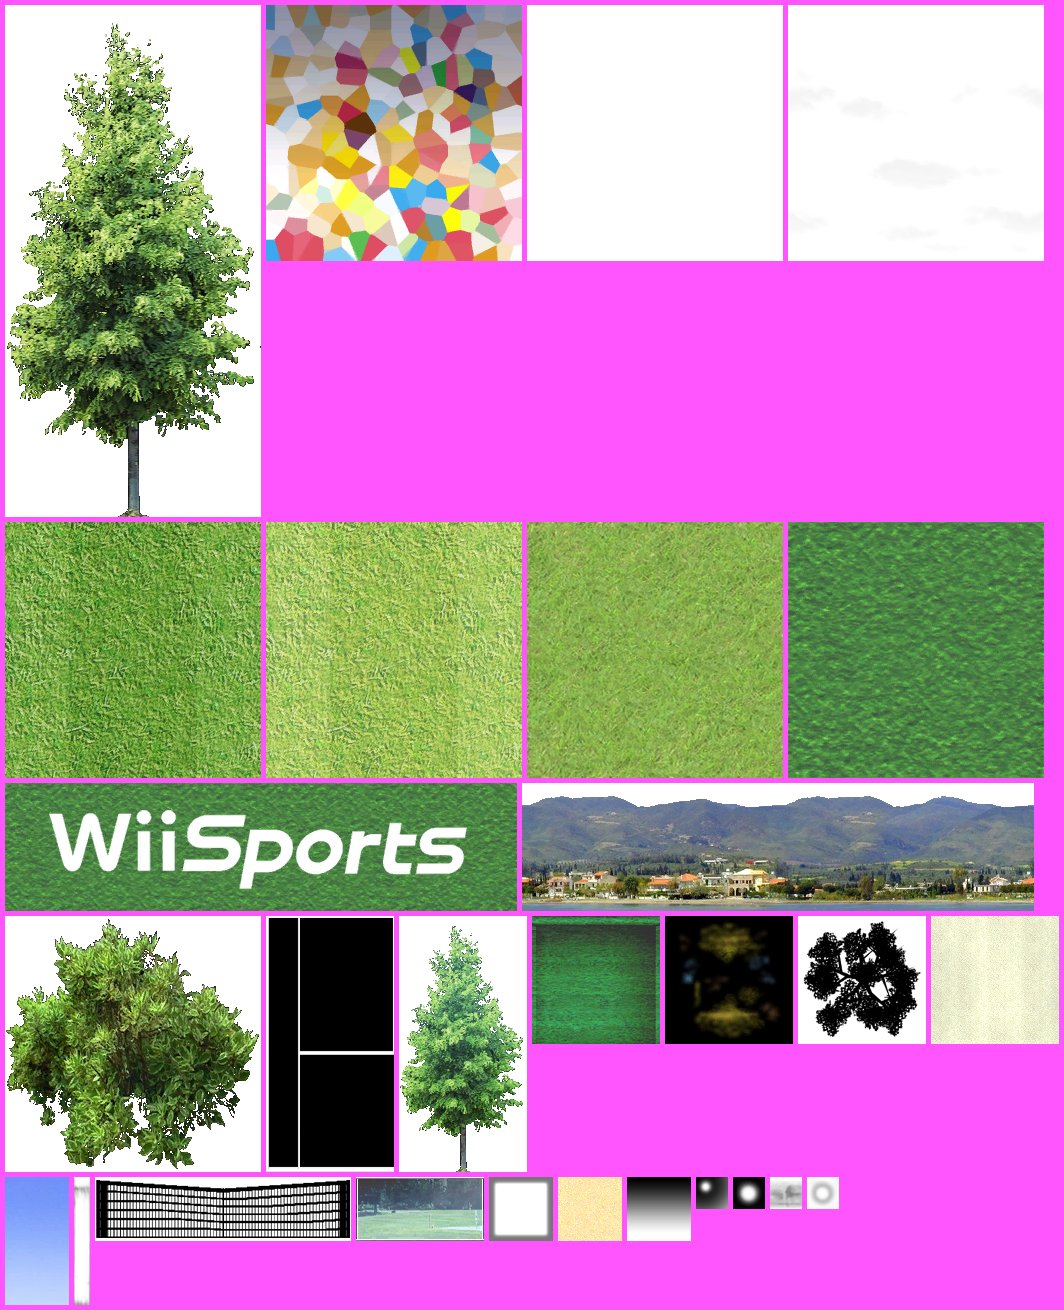 Wii Sports - Tennis Field A